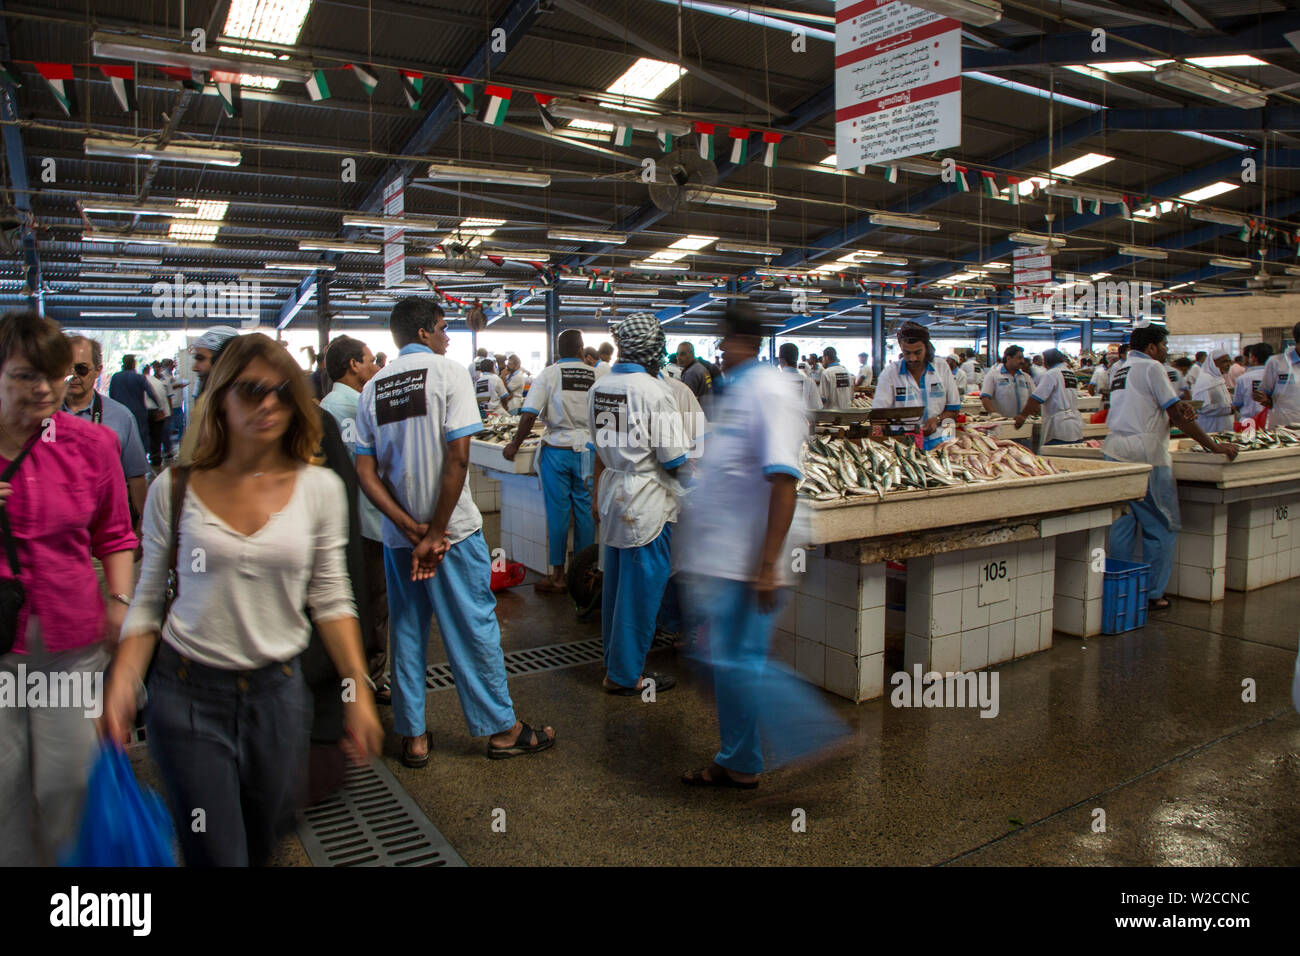 Fischmarkt, Deira, Dubai, Vereinigte Arabische Emirate Stockfoto